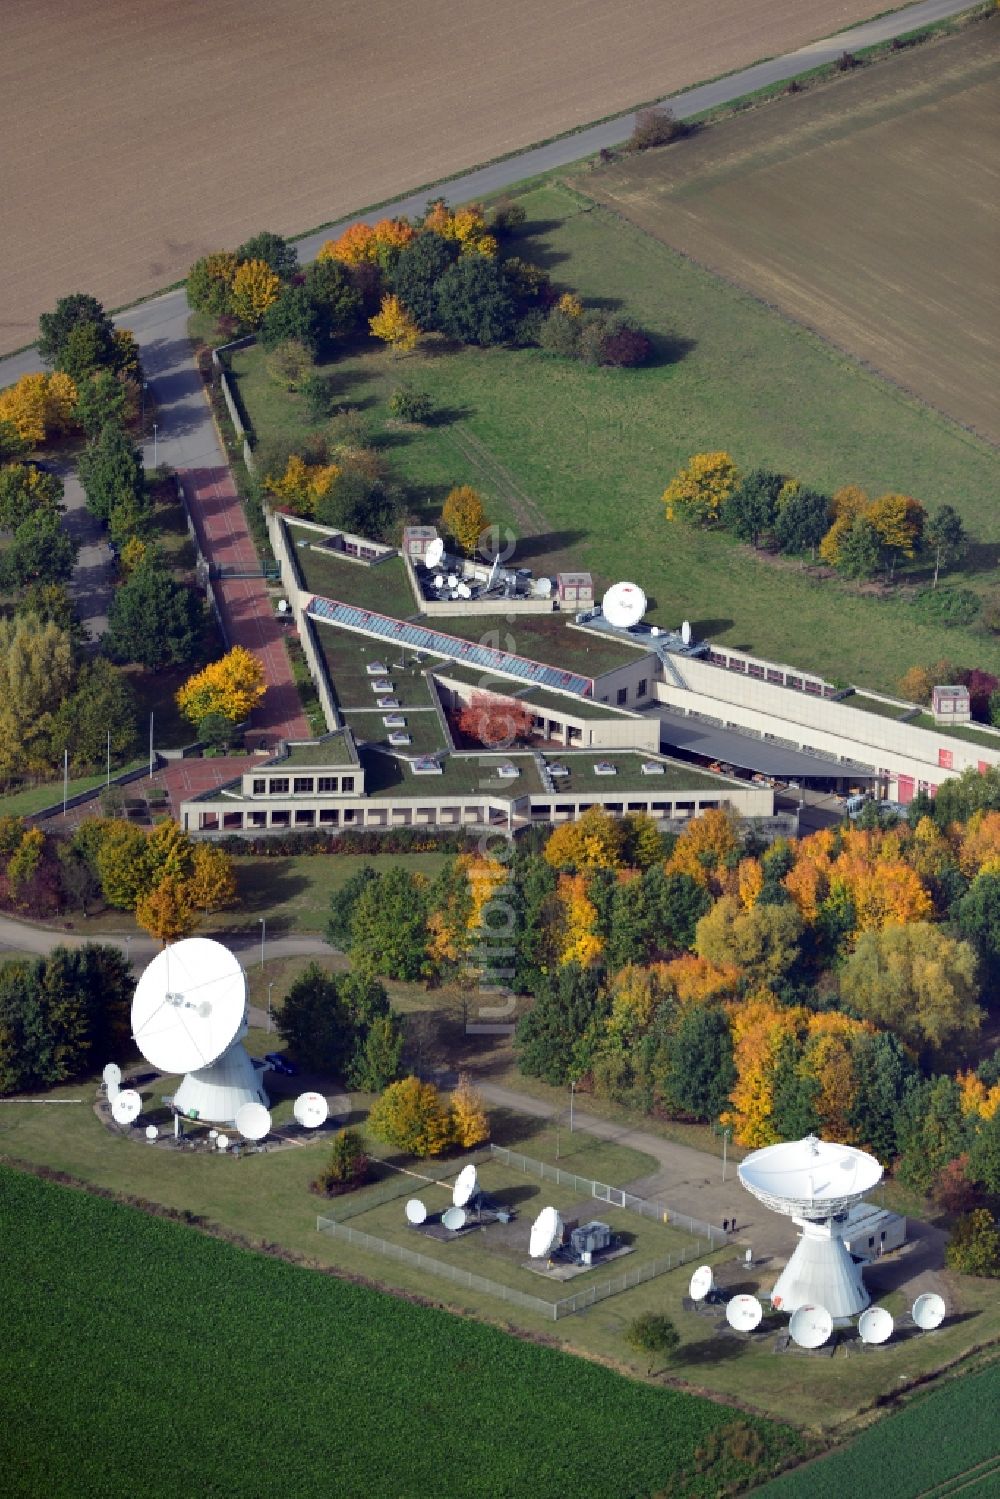 Groß Berkel von oben - Erdfunkstelle CET Teleport in Groß Berkel im Bundesland Niedersachsen